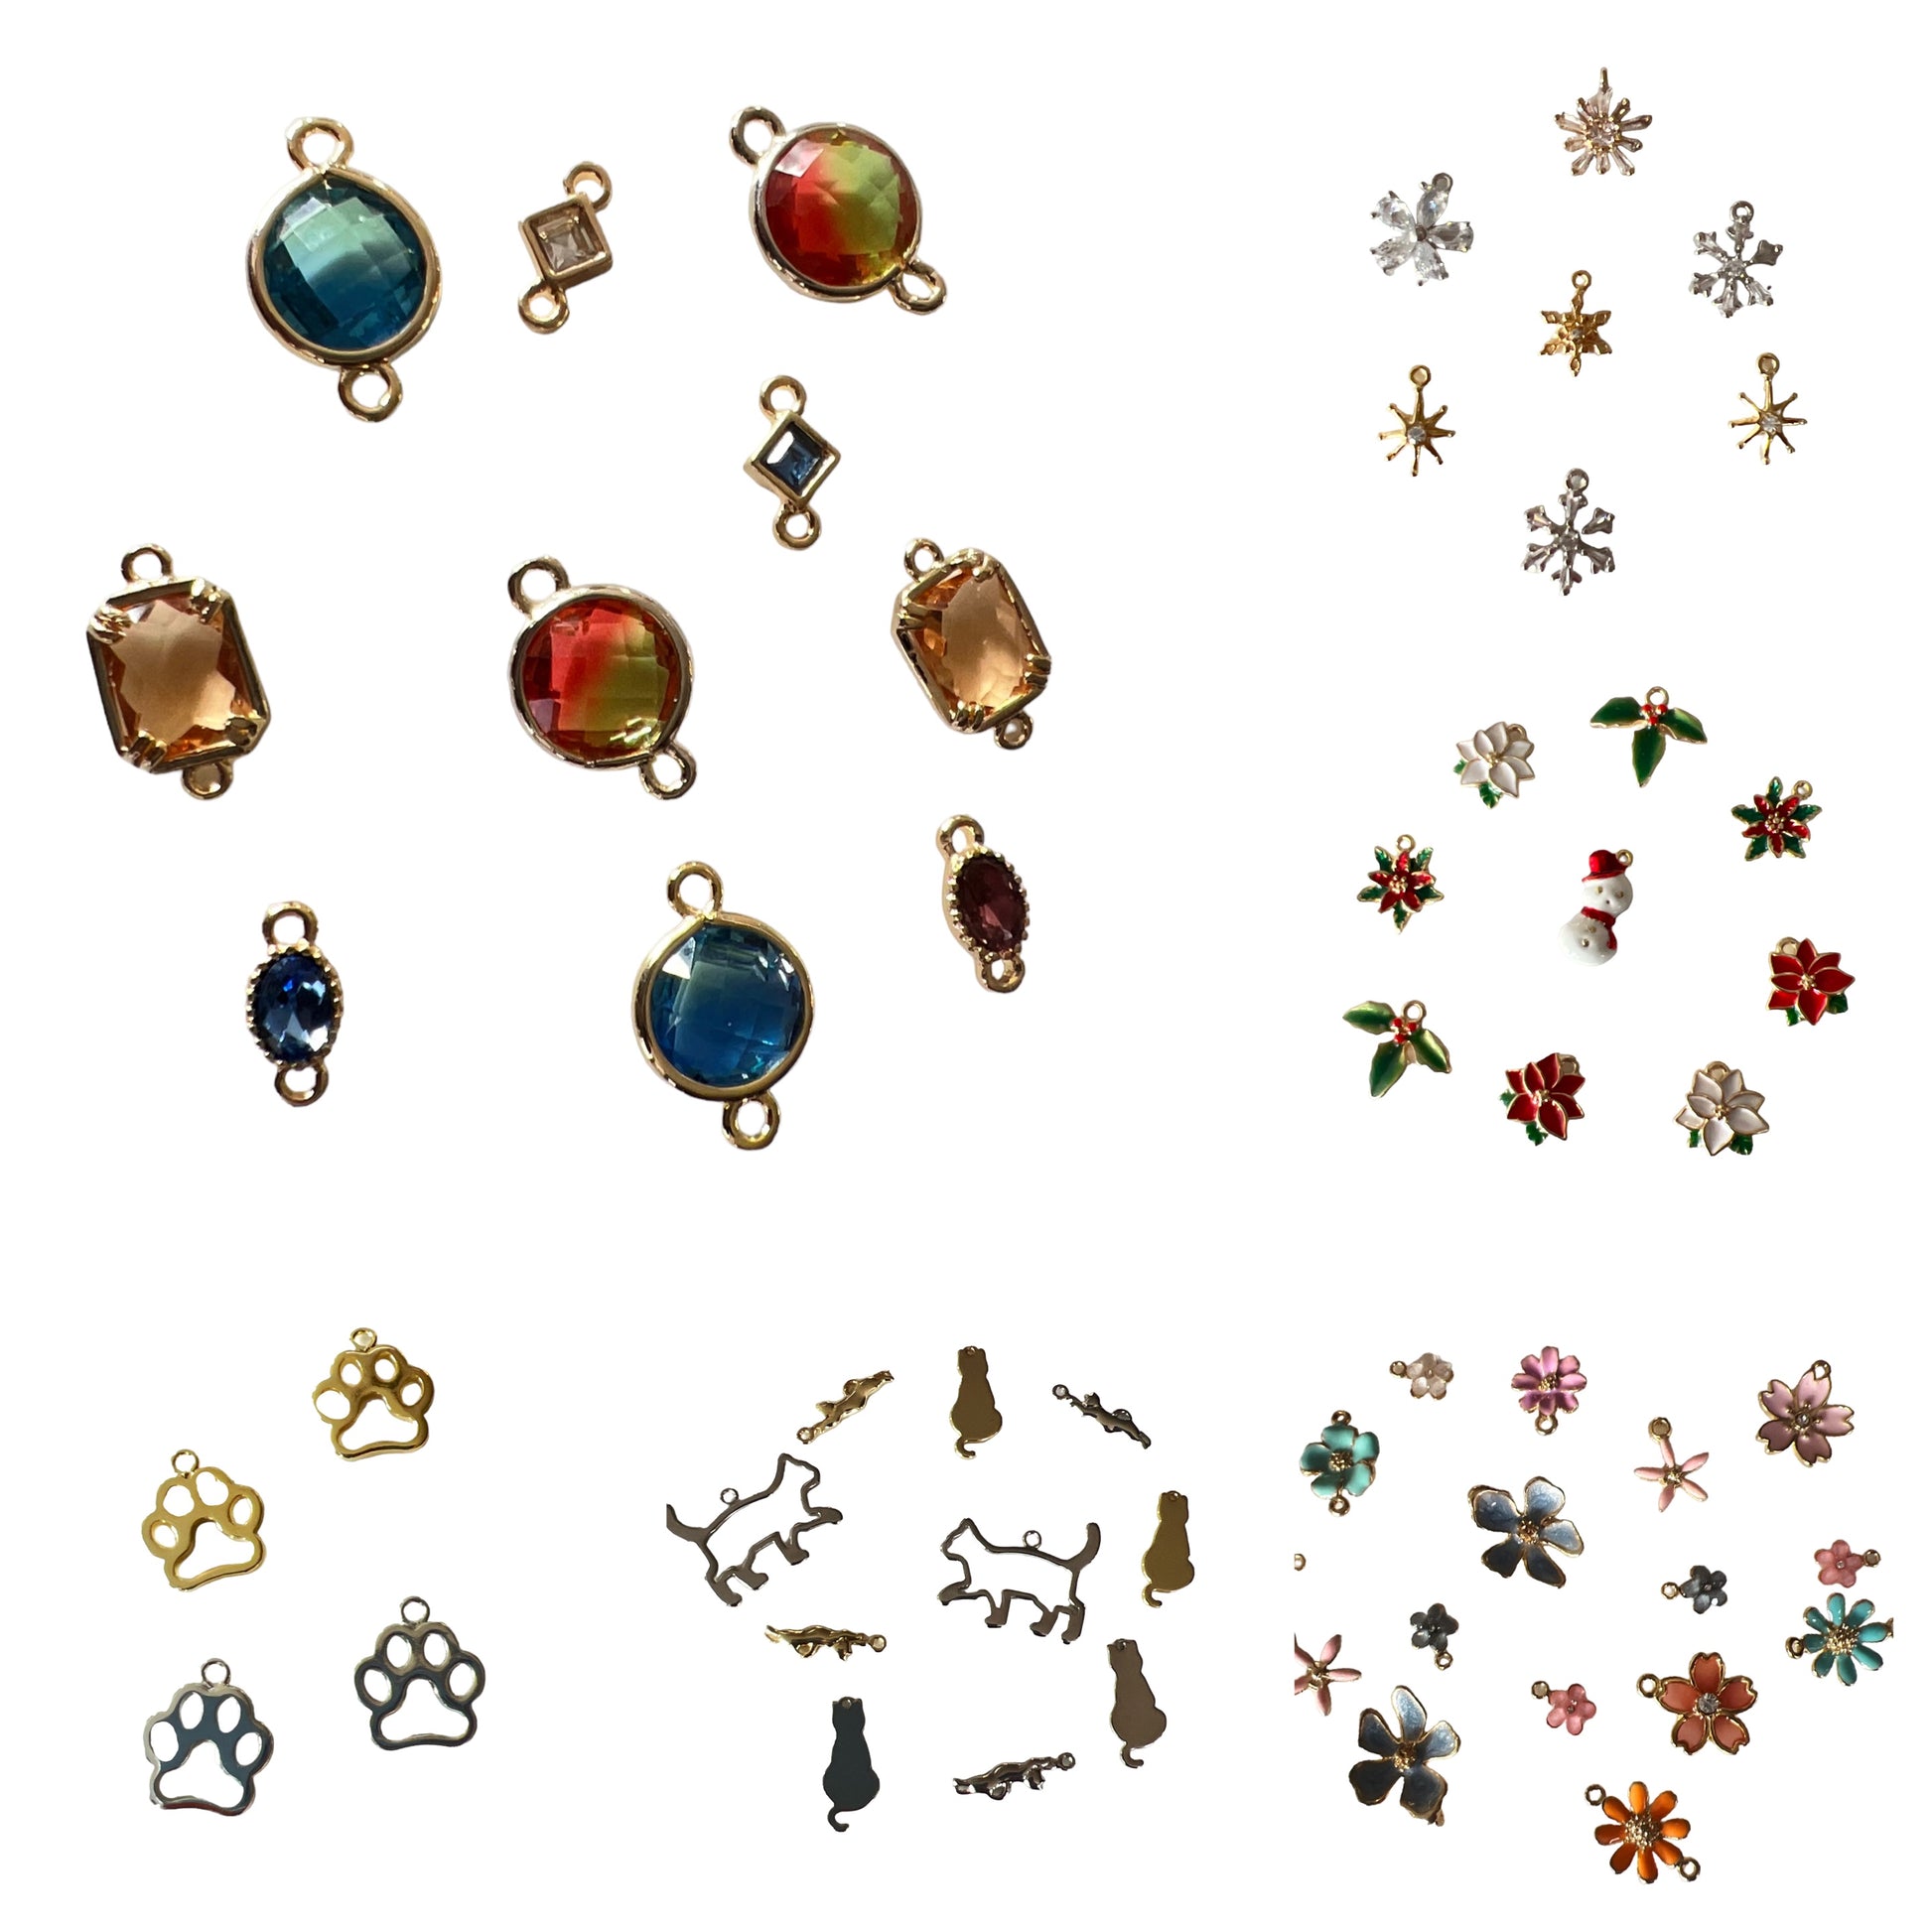 Infinity Jewelry charms, Infinity jewelry connectors, Permanent jewelry charms, permanent jewelry connectors